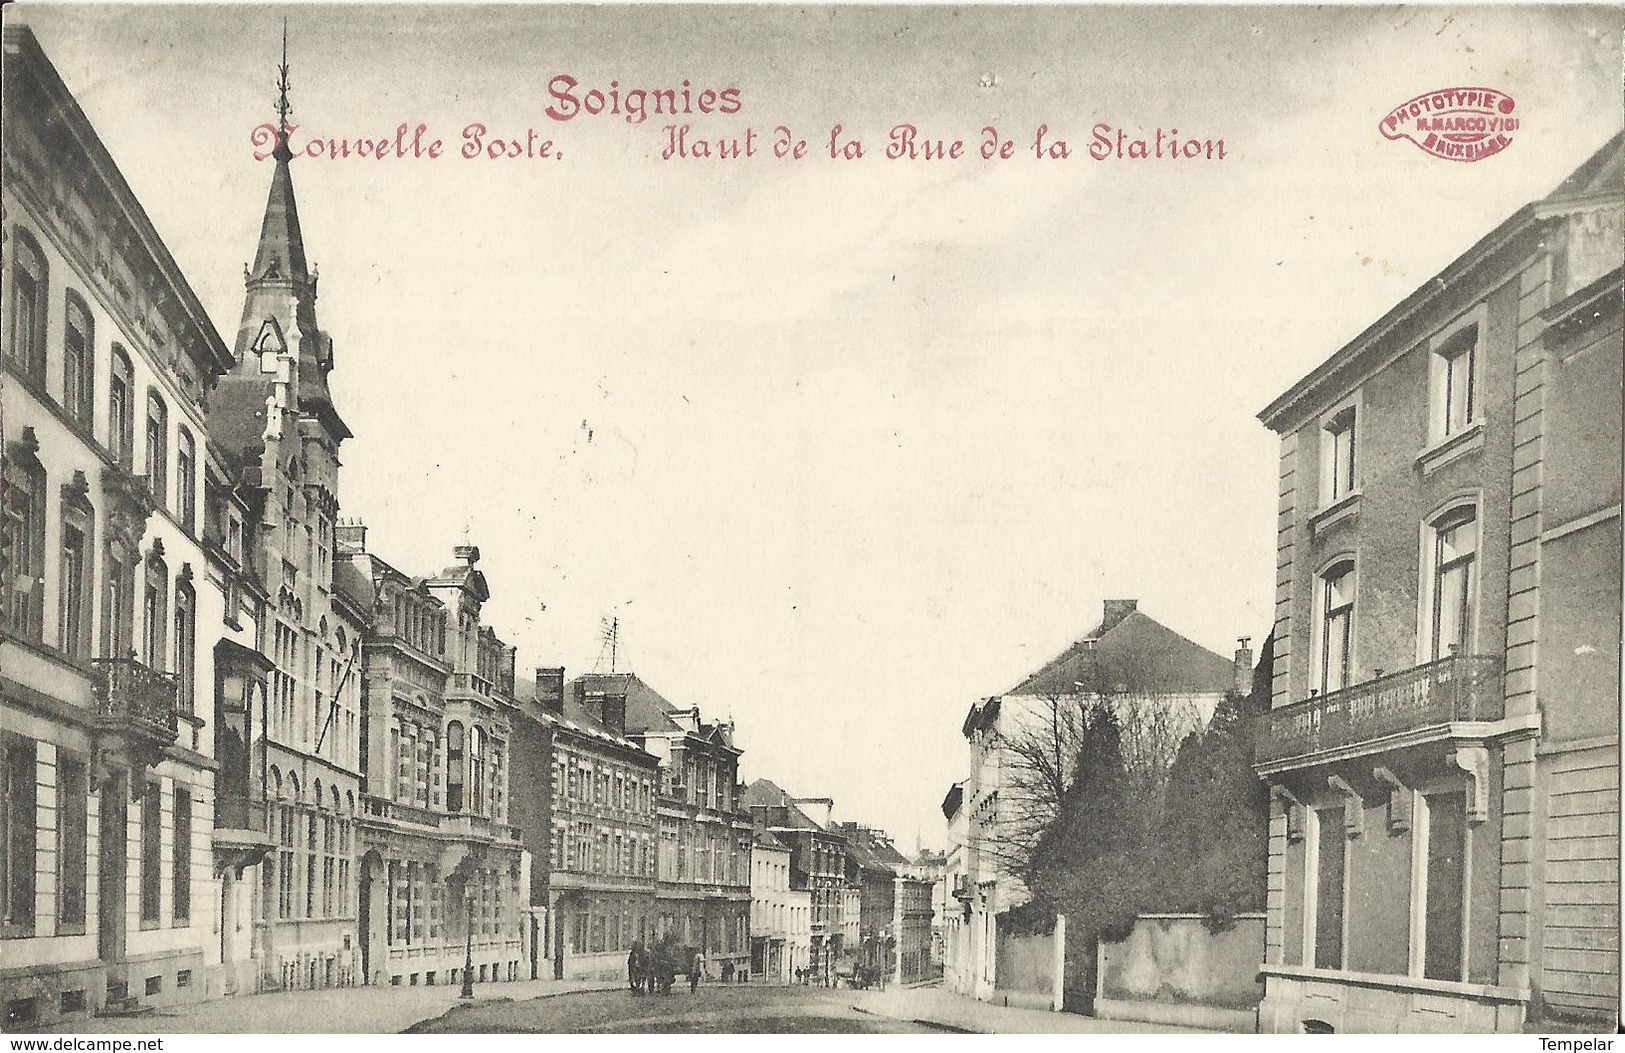 Soignies Nouvelle Poste - Haut De La Rue De La Station 1913 - Soignies